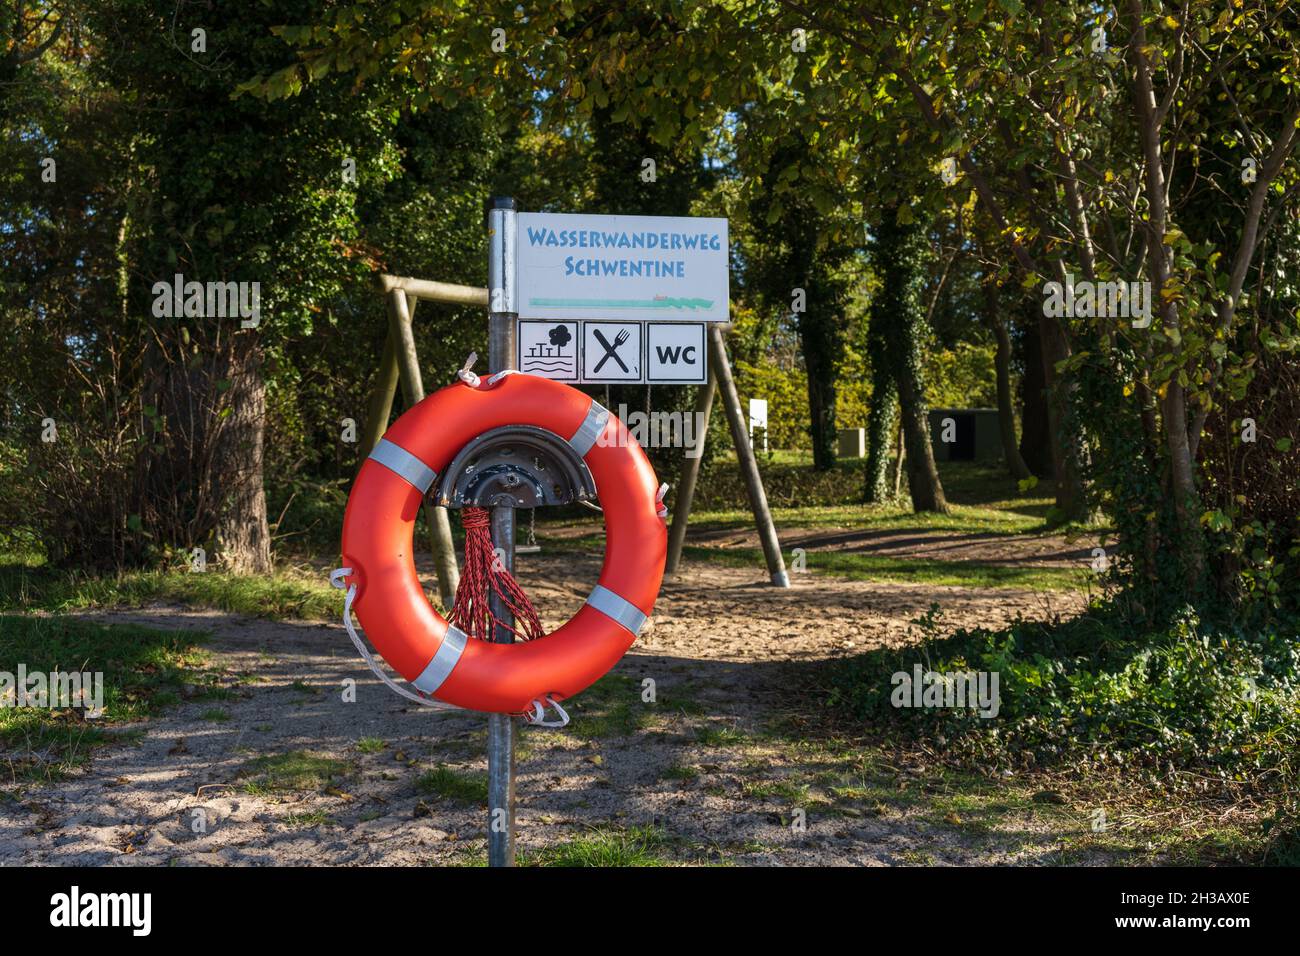 Wasserwanderweg am Plöner Ver mit Rettungsring an einer Badestelle Foto de stock